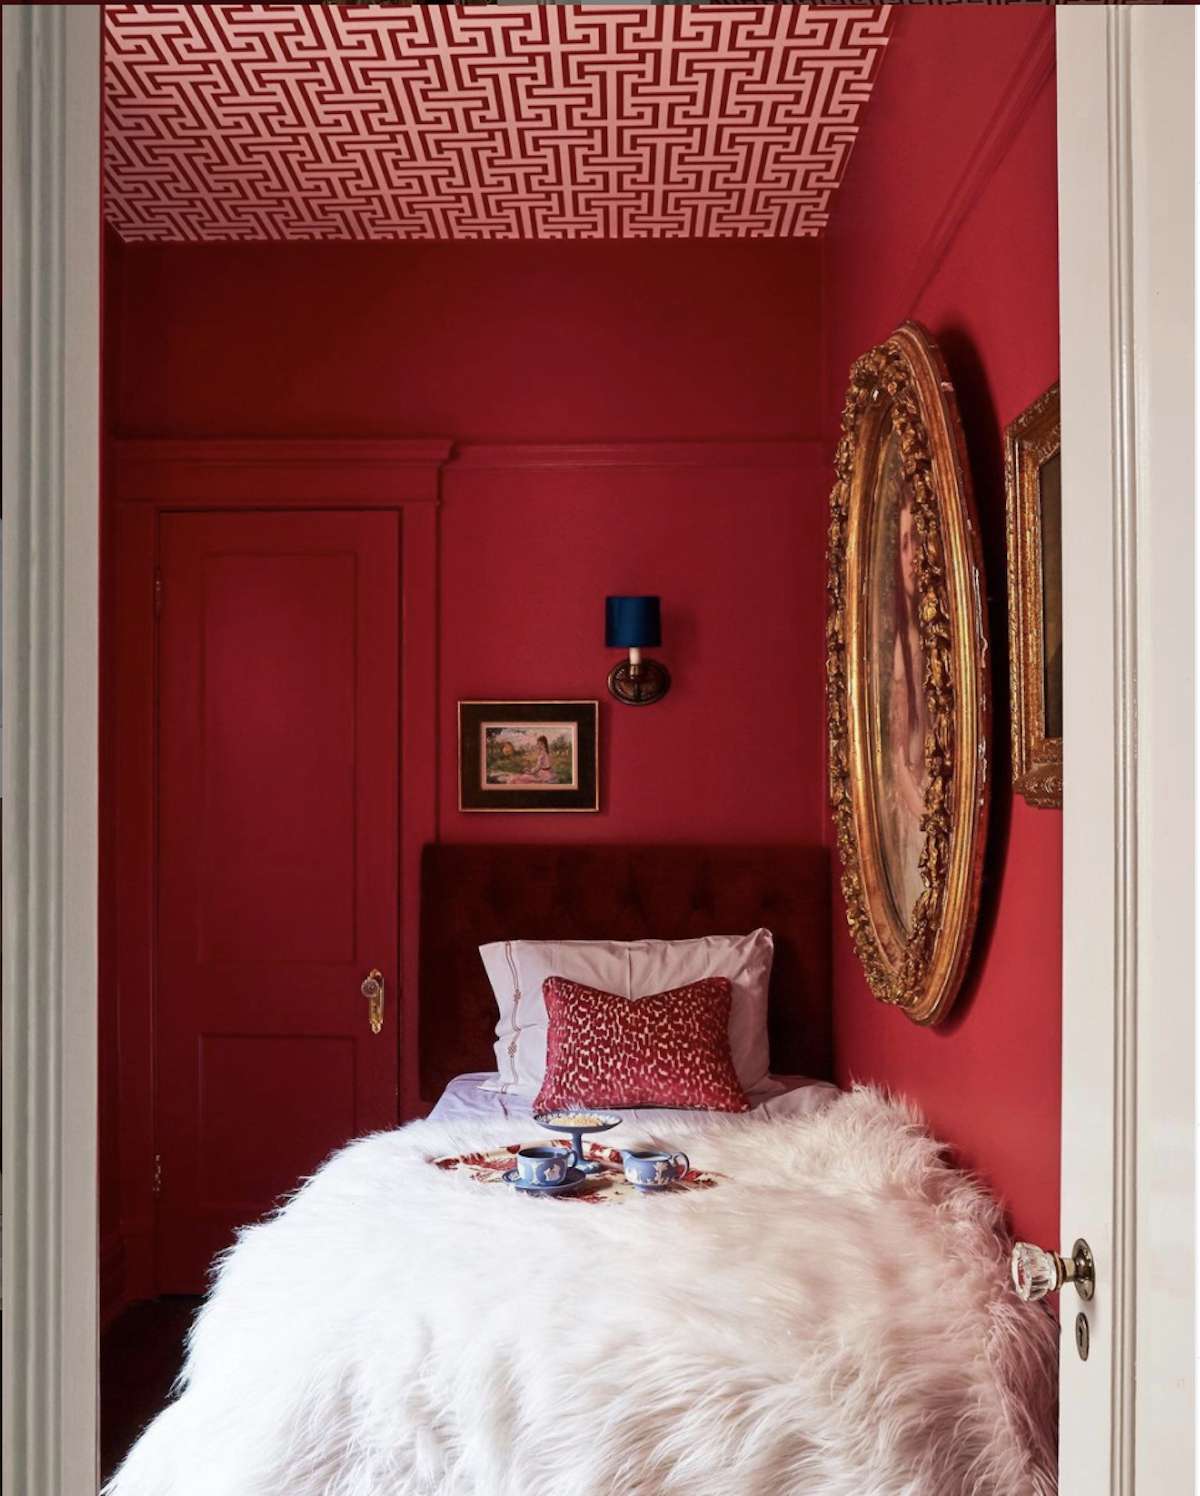 dormitorio con paredes rojas, techo con motivos rojos y blancos, manta mullida blanca